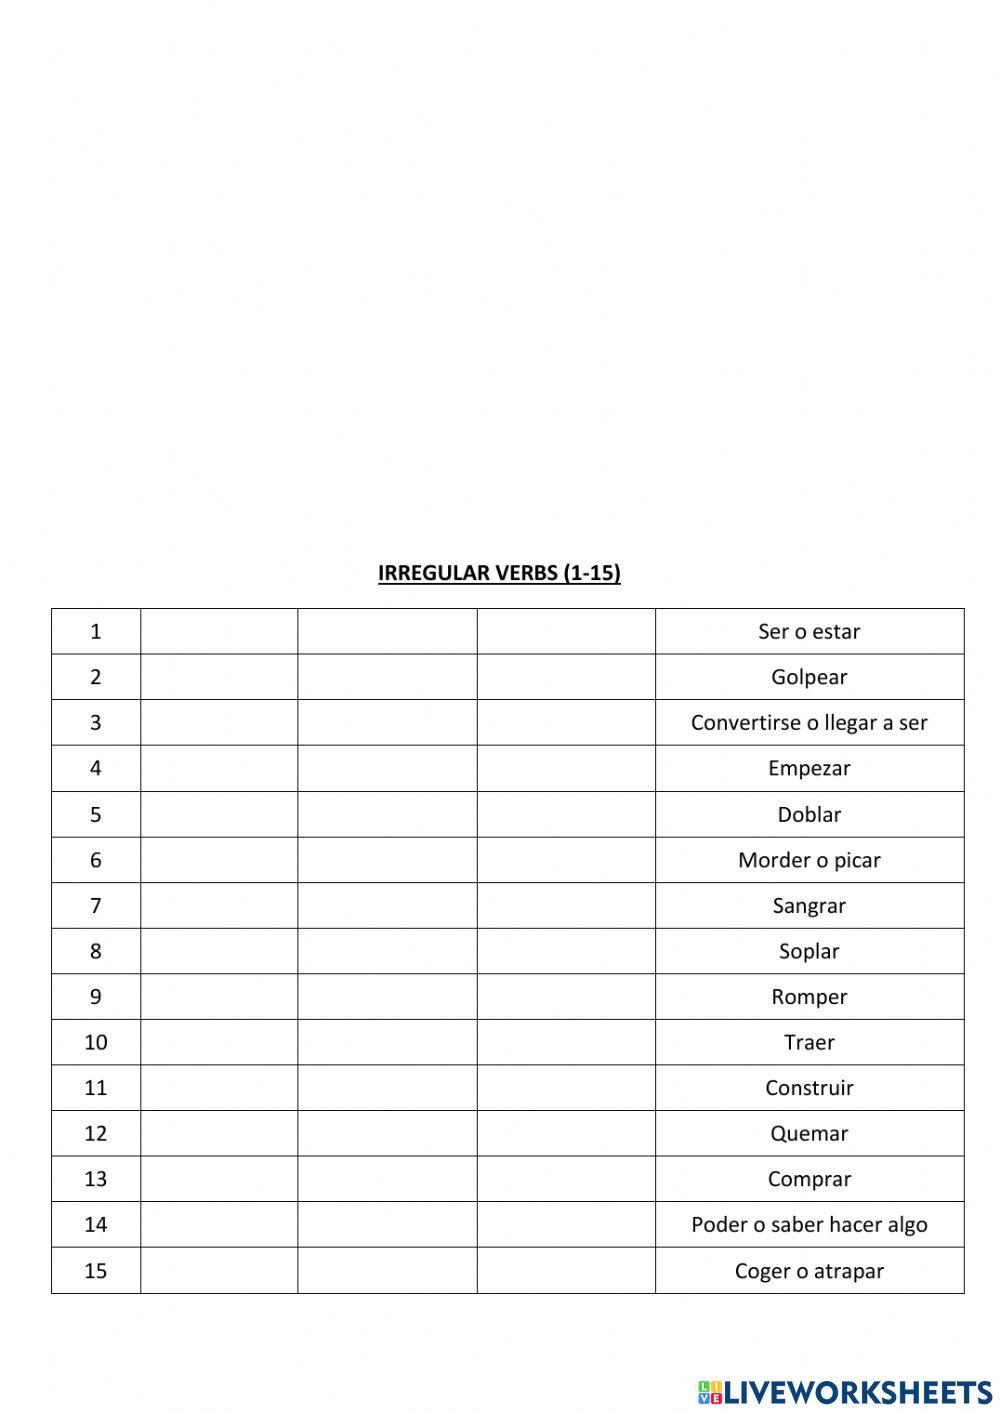 Irregular verbs 1-15